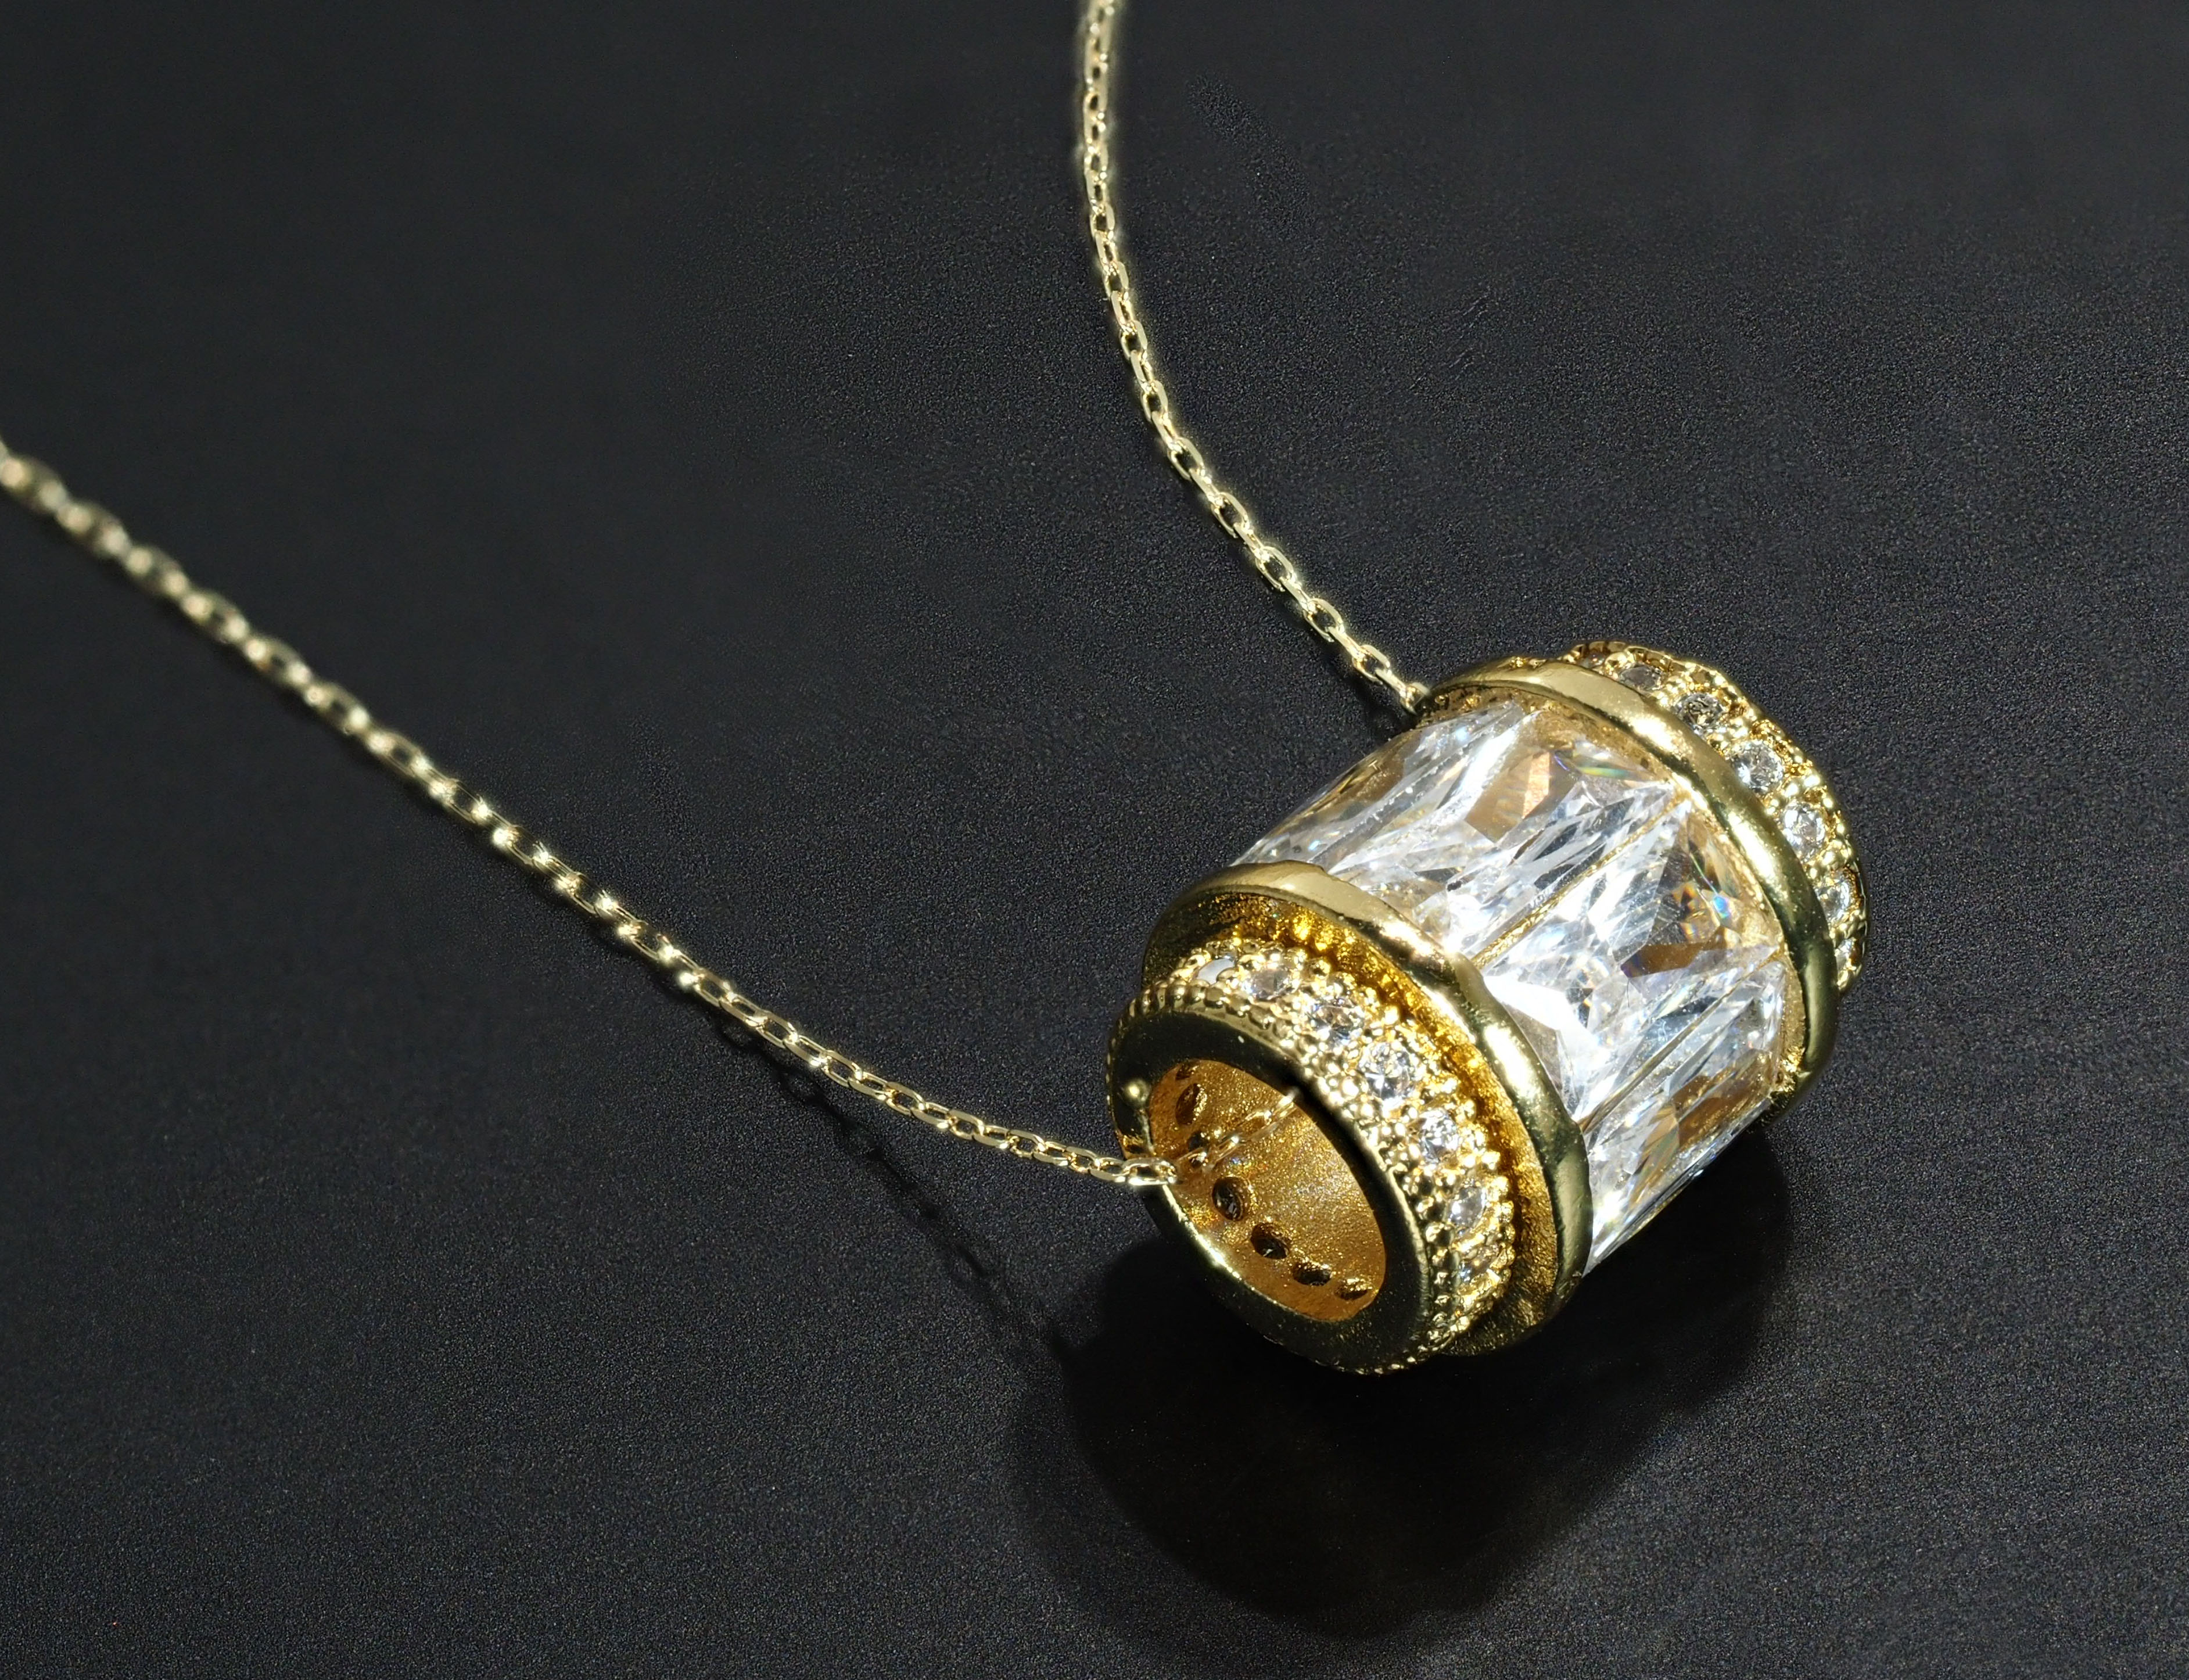 絶妙なデザイン 18金製 豪華 大粒 ダイヤモンド ネックレス フル エタニティ 国内生産品 厳選 K18 ネックレス